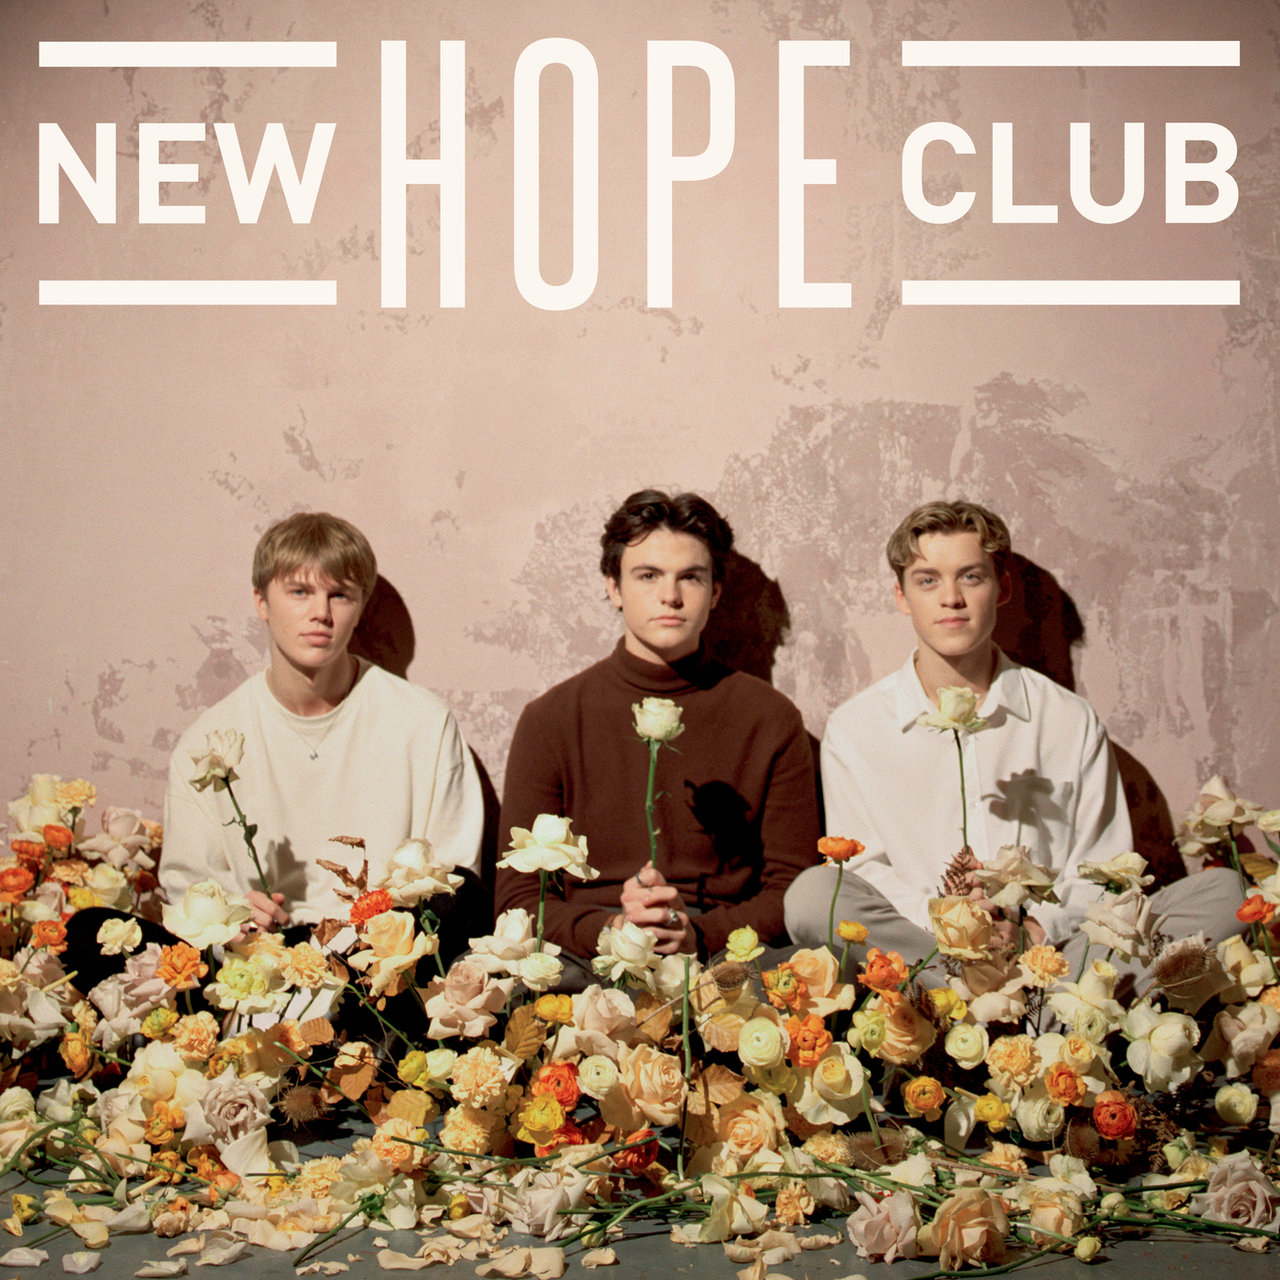 New Hope Club New Hope Club cover artwork